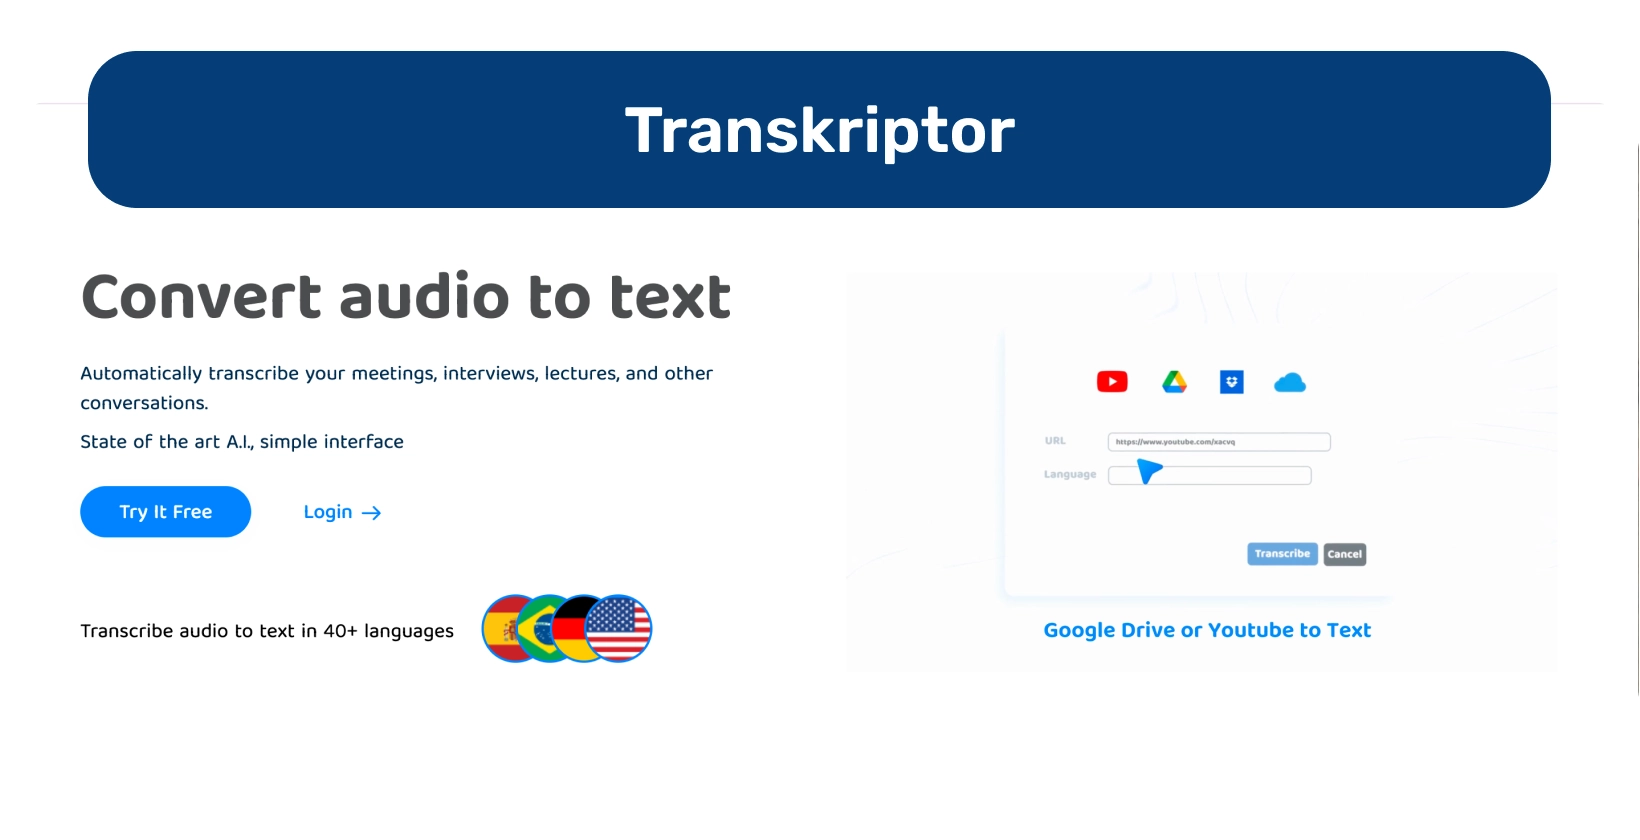 Інформаційна панель Transkriptor демонструє функції перетворення аудіо в текст для ефективної транскрипції.